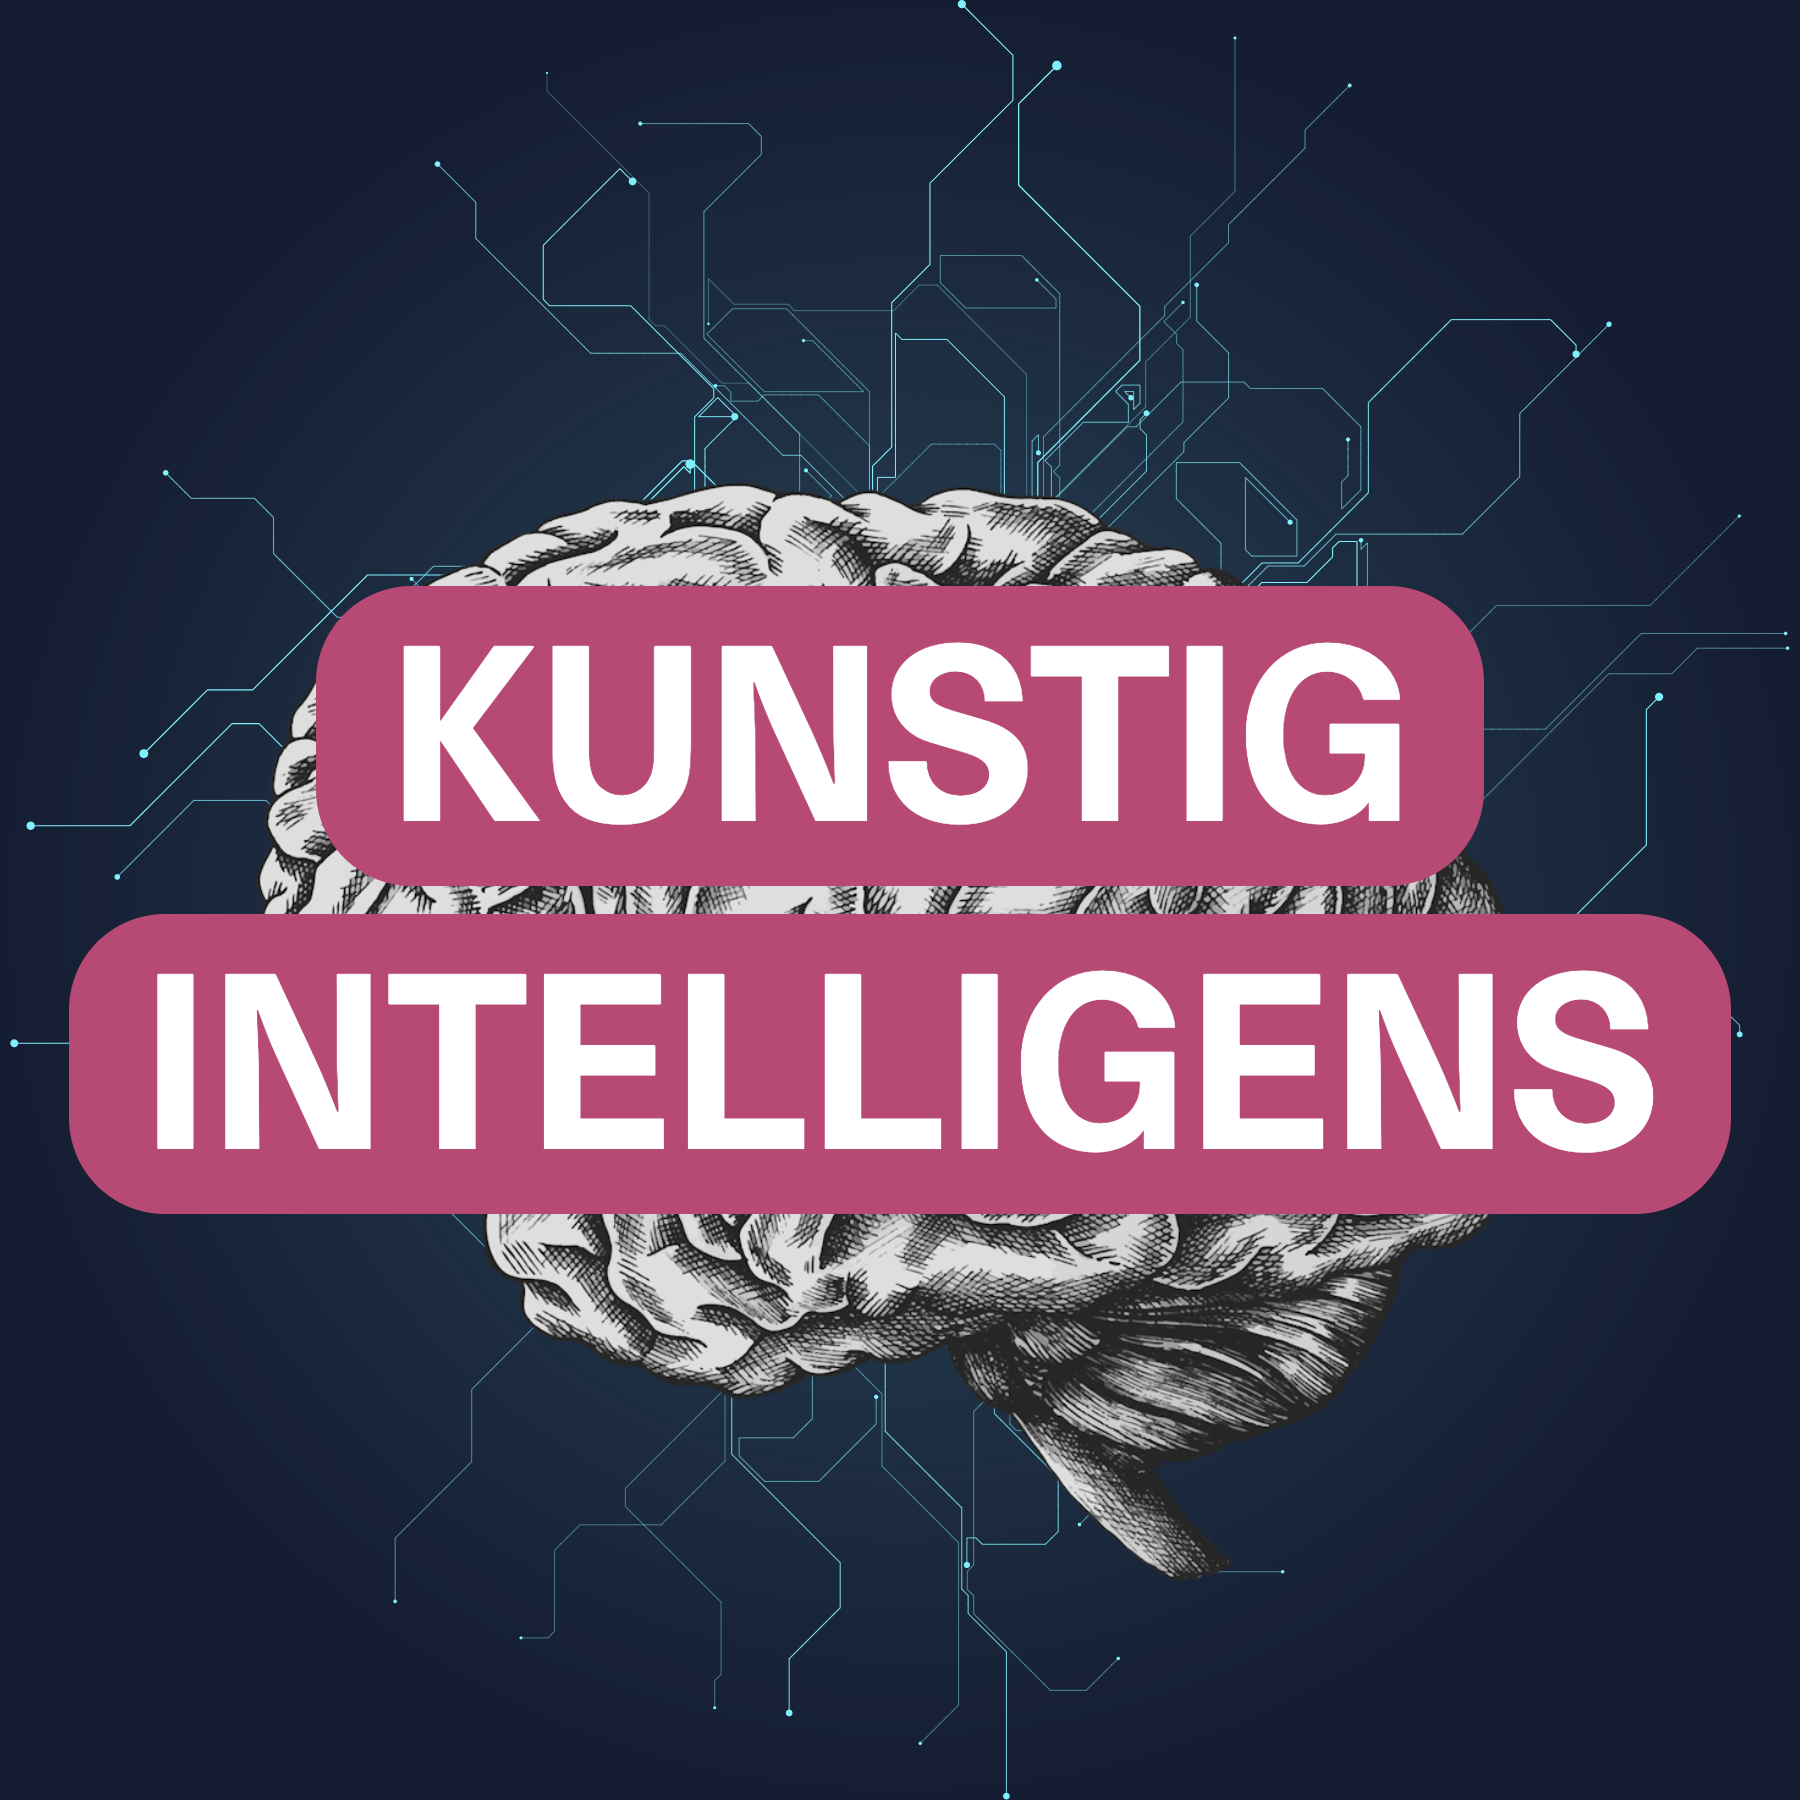 Illustrasjon av hjerne med teksten "Kunstig intelligens".